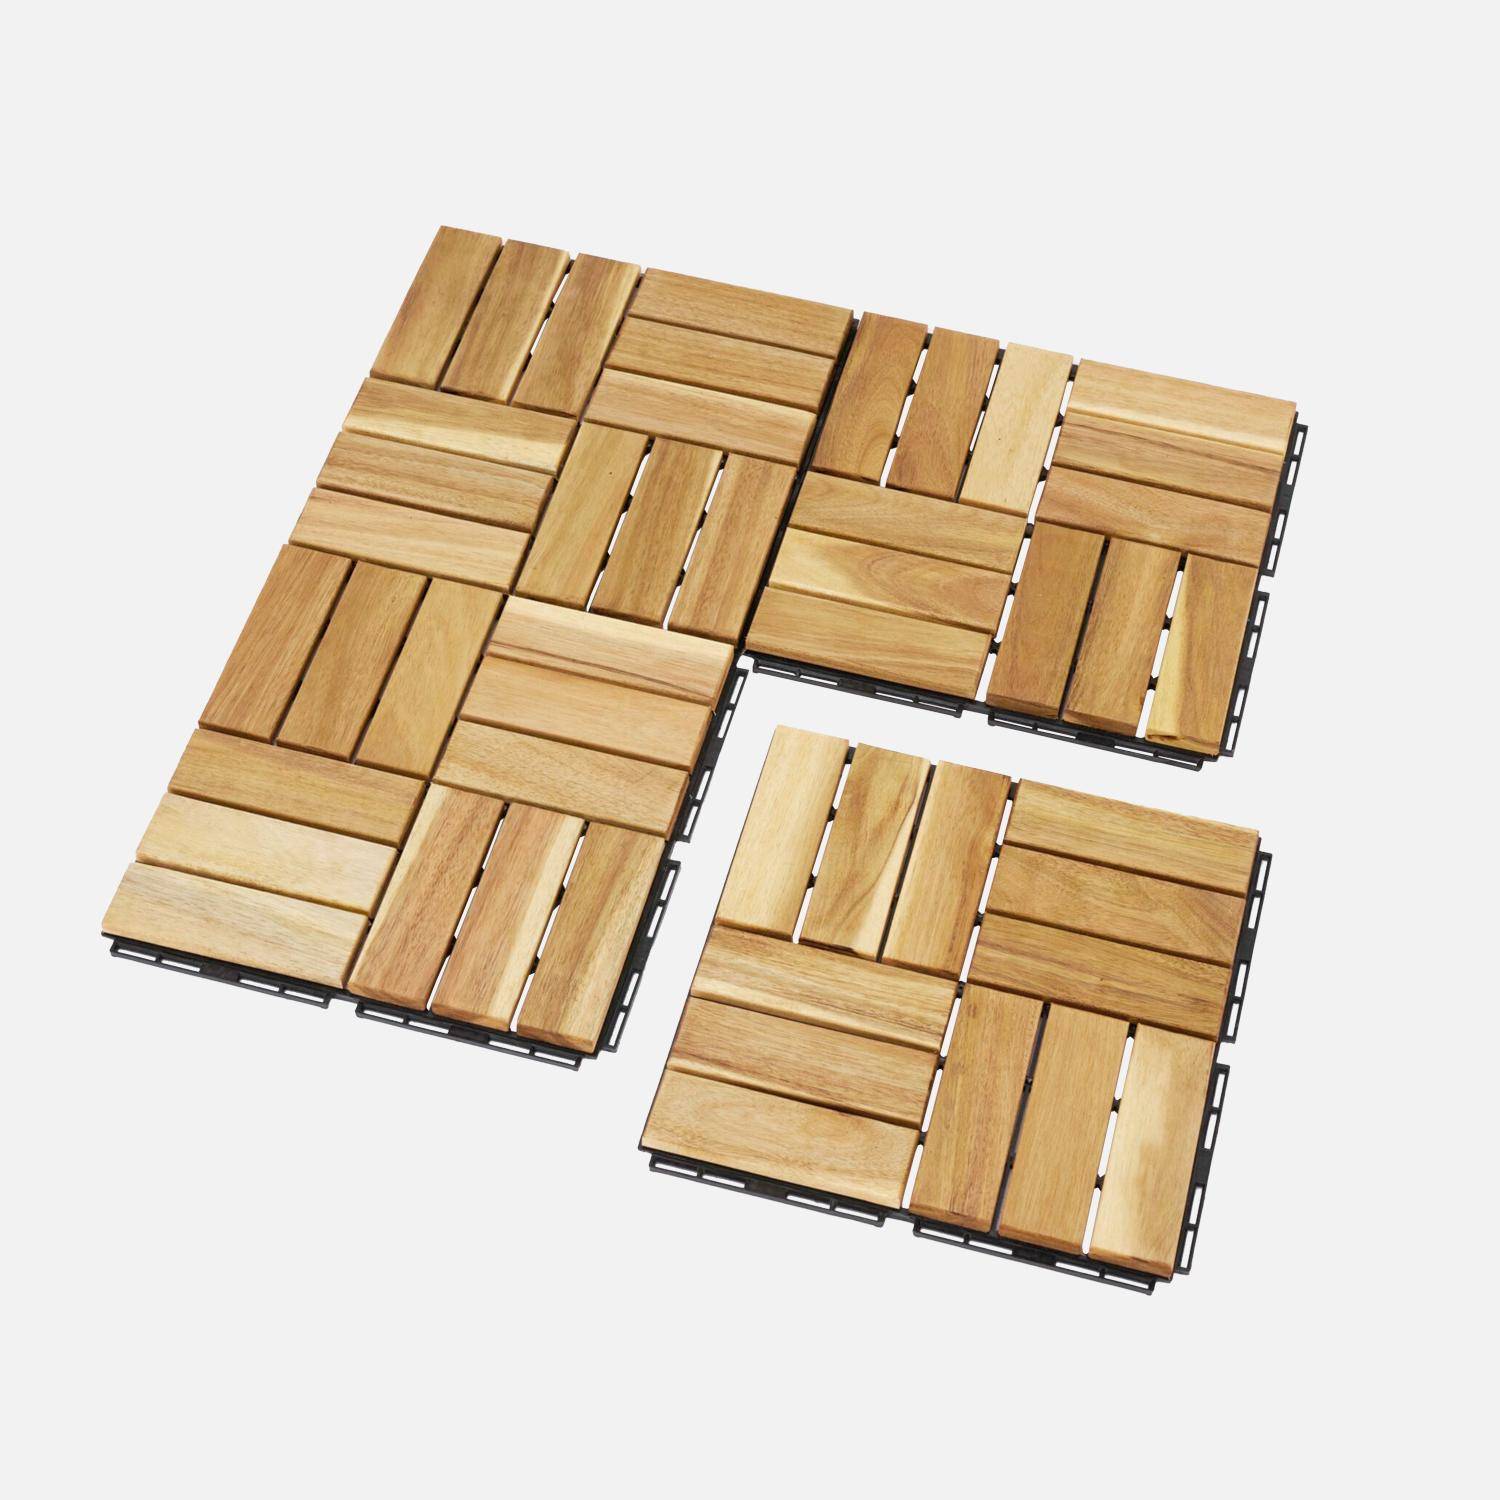 Lote de 36 ladrilhos de madeira de acácia para decks 30x30cm, padrão quadrado, encaixáveis,sweeek,Photo3